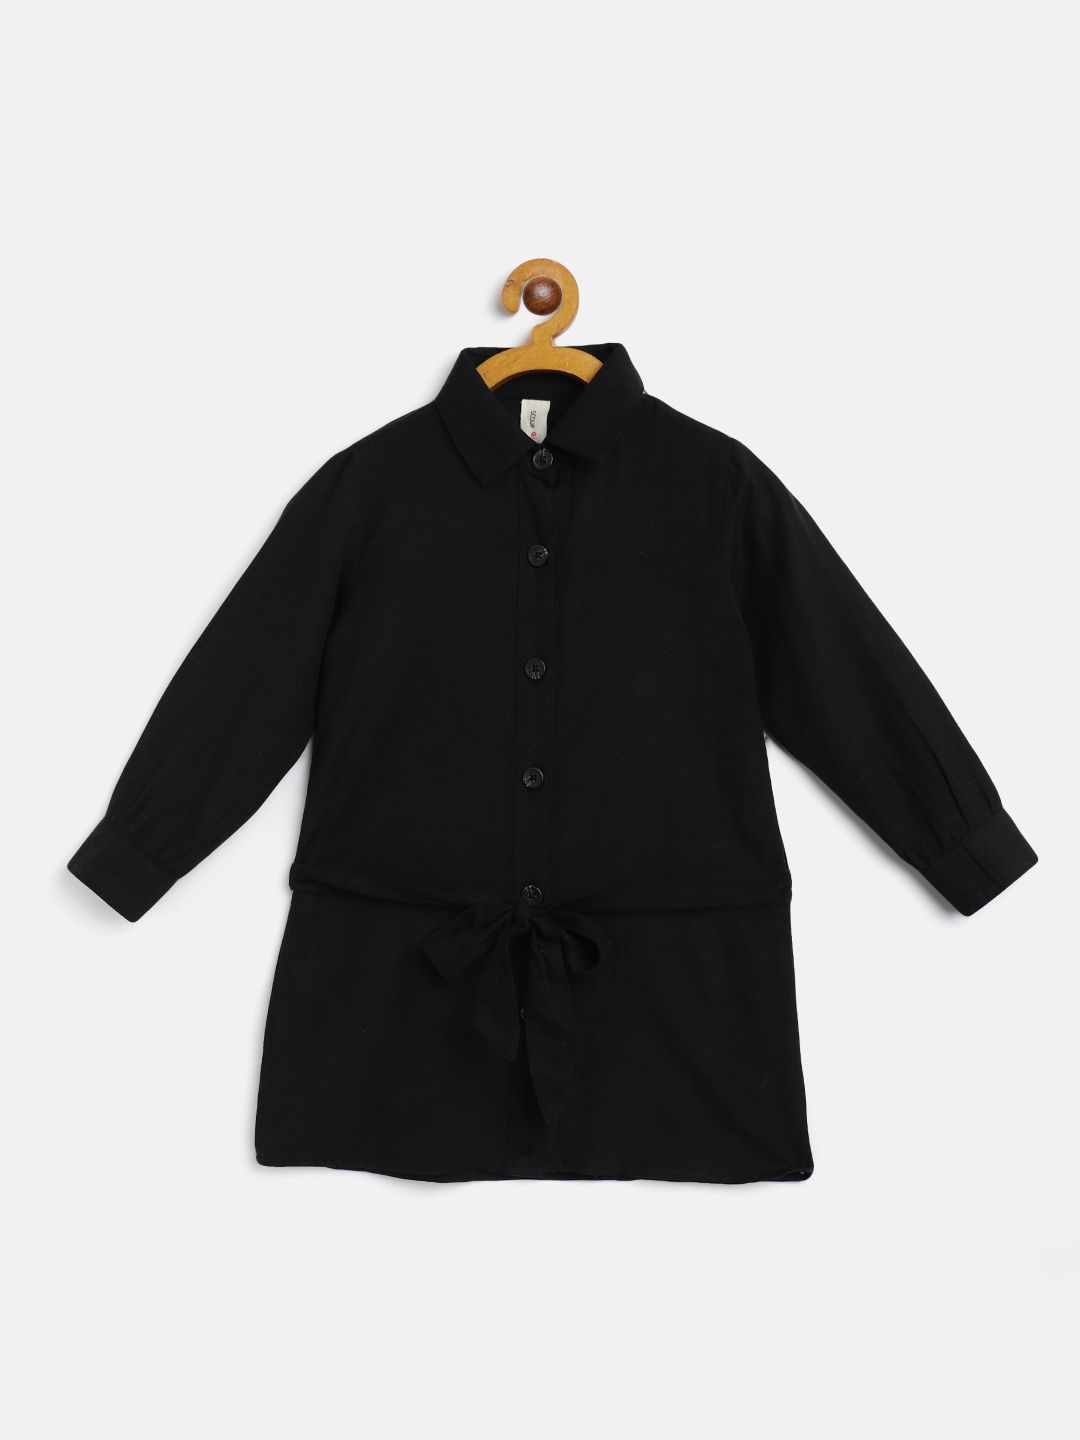 Black front buttoned Shirt dress